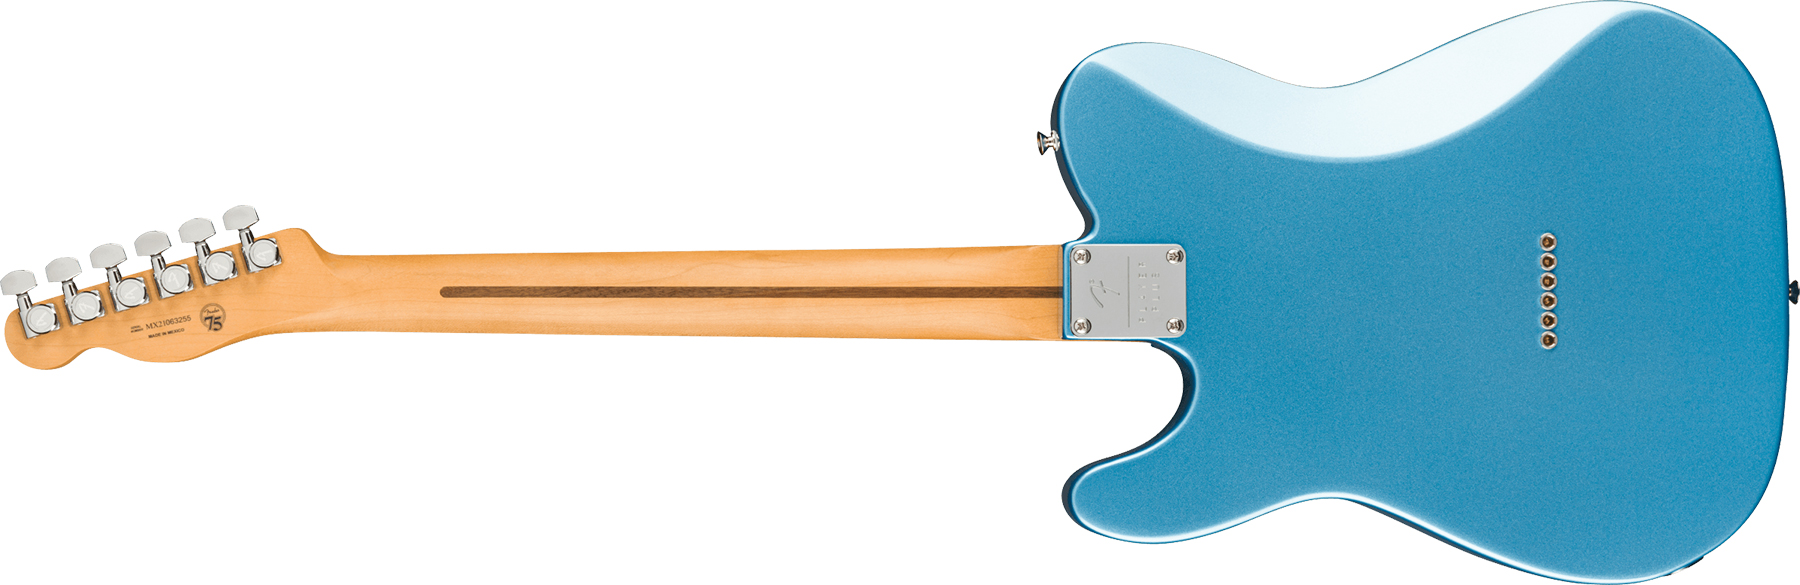 Fender Tele Player Plus Nashville Mex 3s Ht Pf - Opal Spark - Guitarra eléctrica con forma de tel - Variation 1